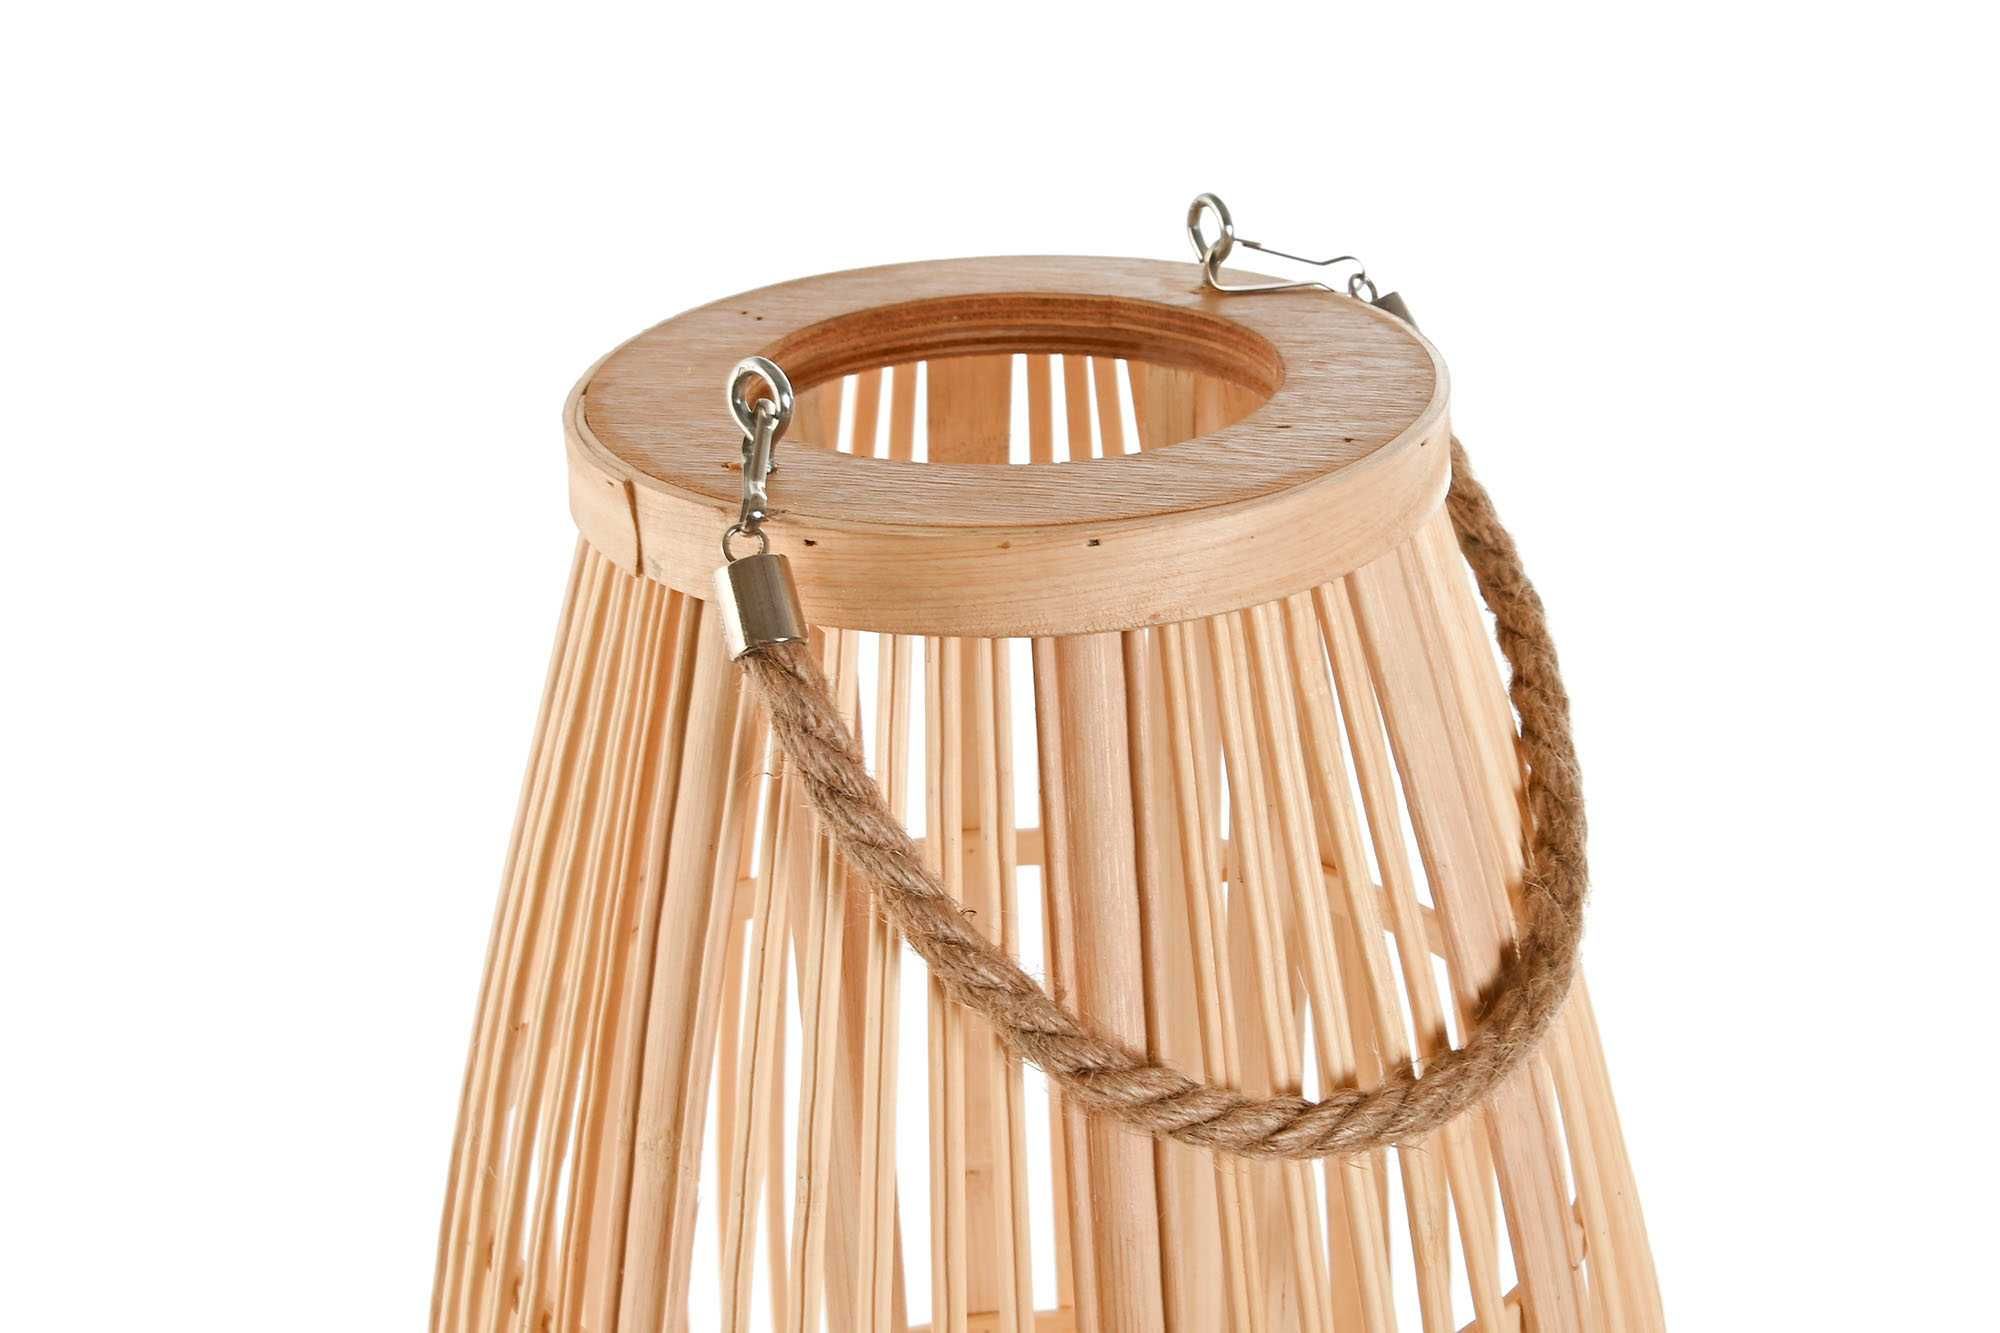 Lanterna de Bamboo Vime cor Natural - 2 Medidas By Arcoazul